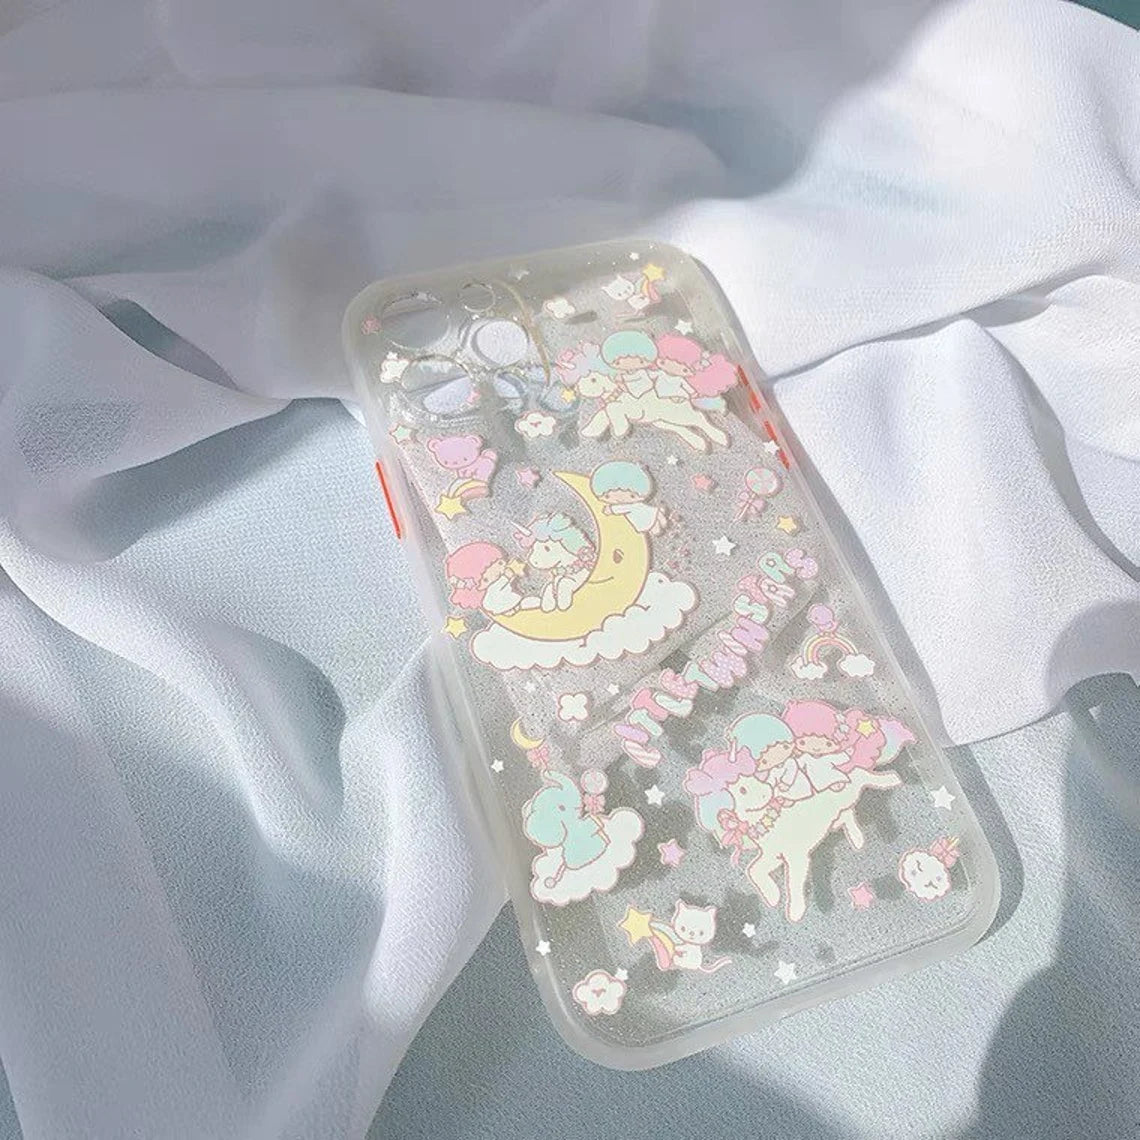 Japanese Cartoon Little Twin Stars Glitter iPhone Case 7 8 PLUS SE2 XS XR X 11 12 13 Pro Promax 12mini